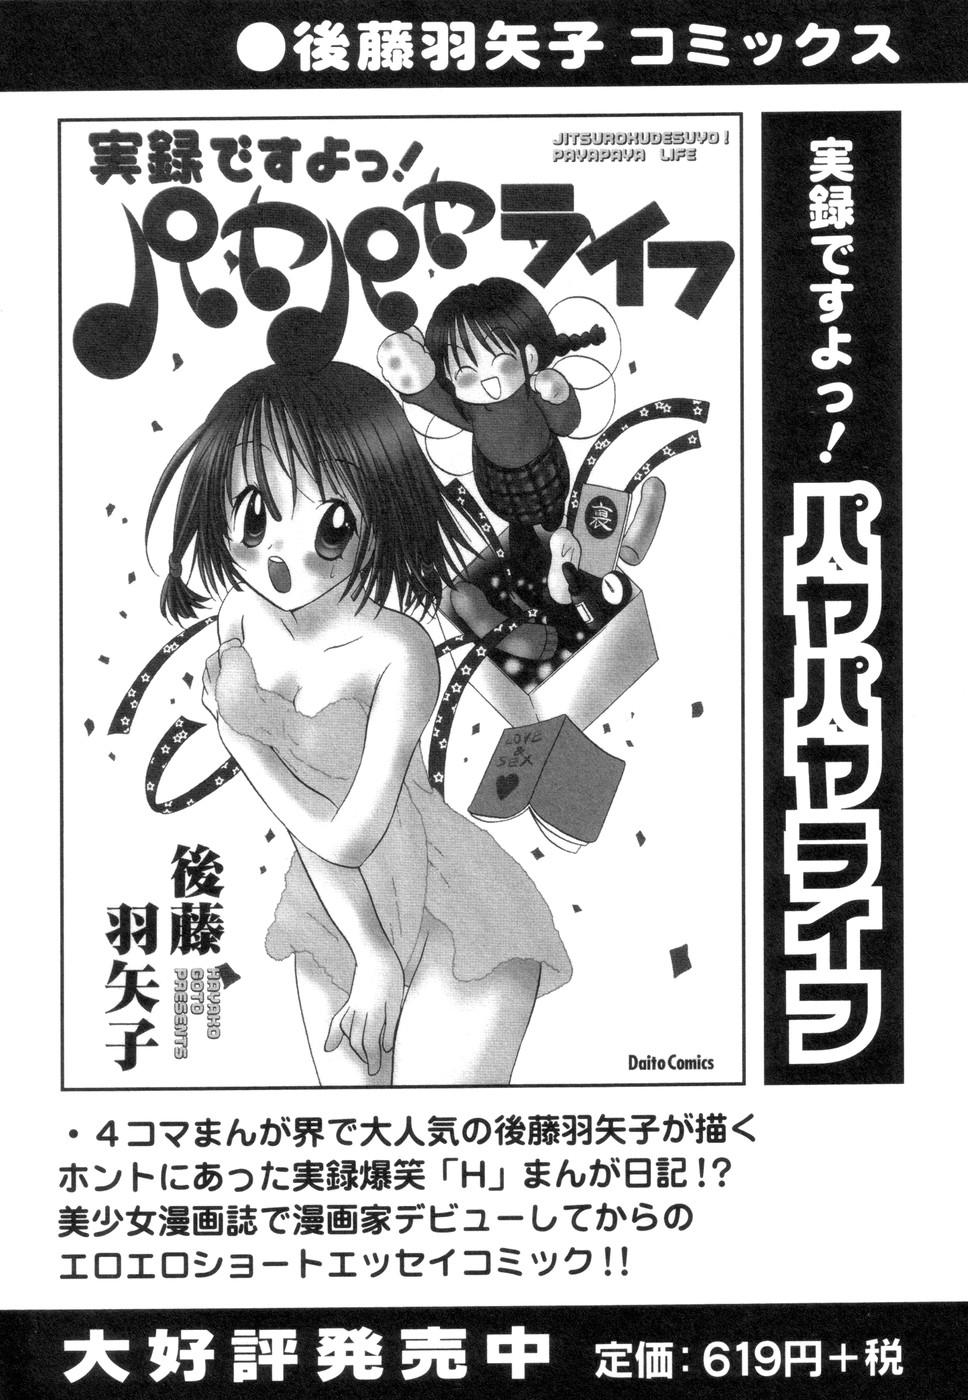 Petite Teenager Jitsuroku Desuyo! Payapaya Life 2 Transvestite - Page 150